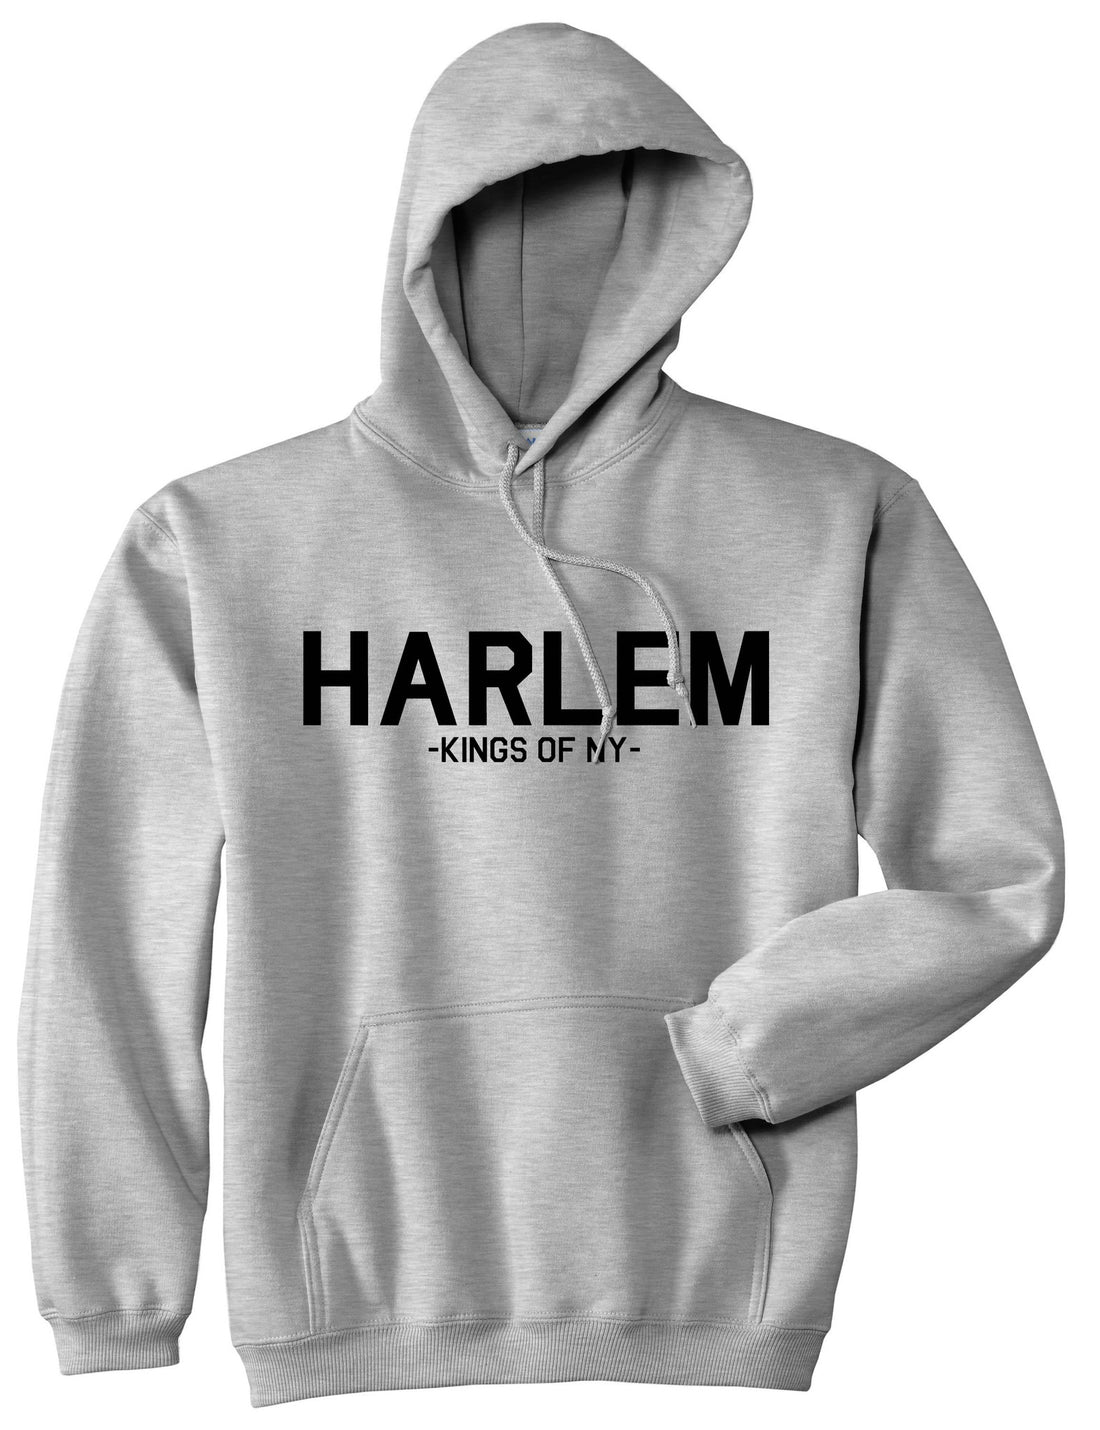 Harlem New York NYC Pullover Hoodie Hoody in Grey